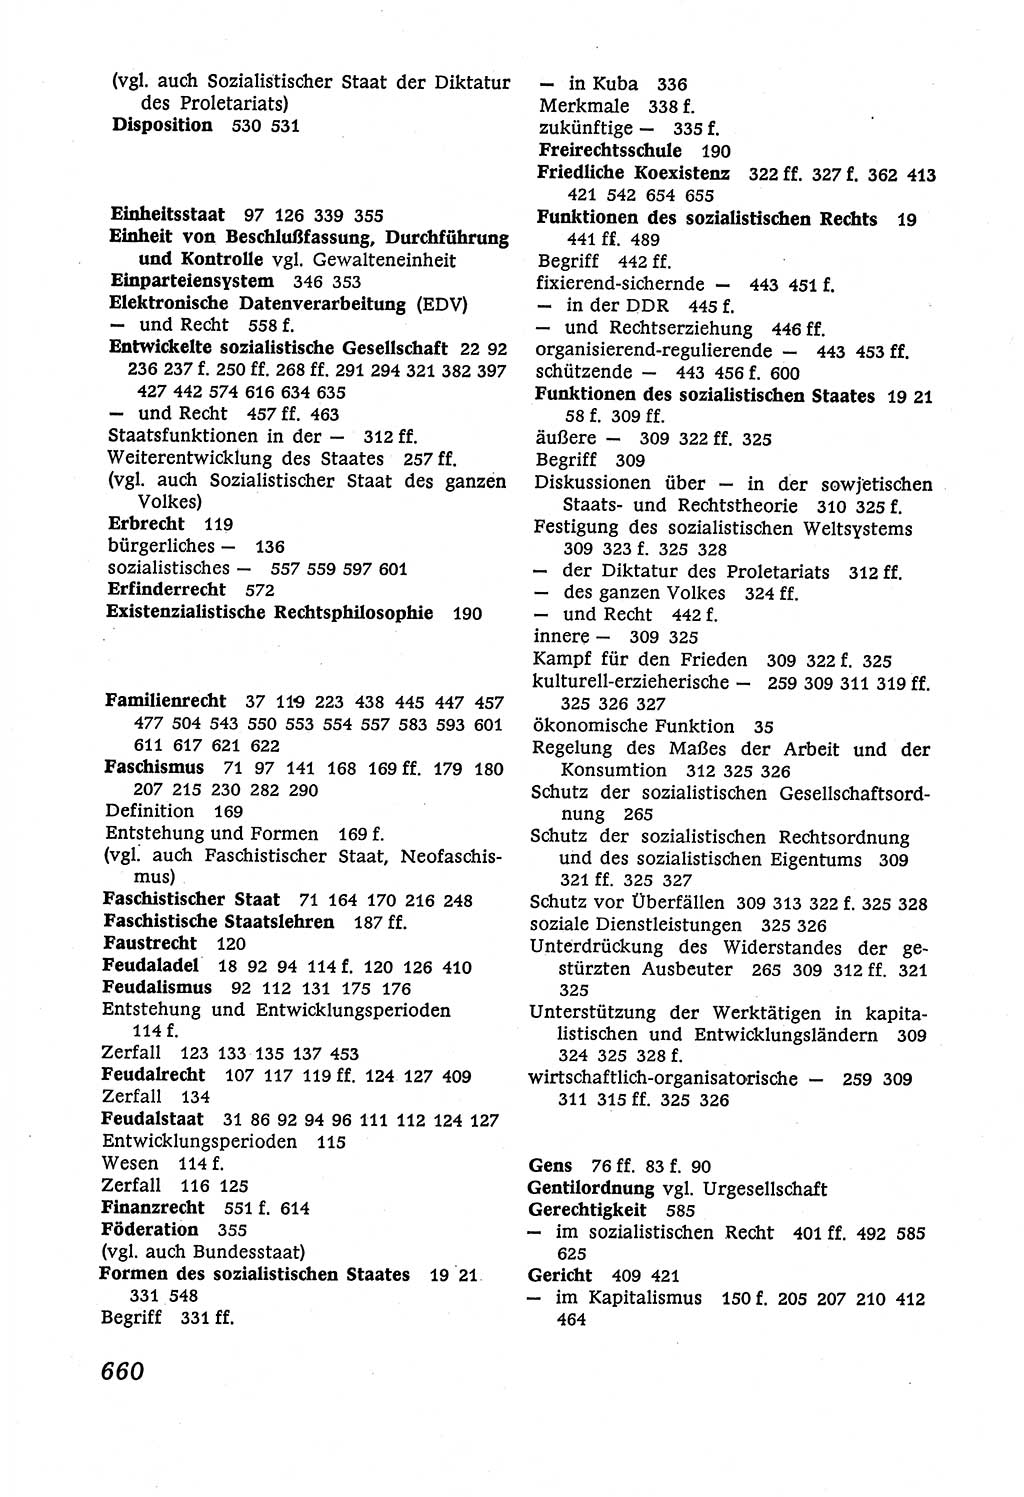 Marxistisch-leninistische (ML) Staats- und Rechtstheorie [Deutsche Demokratische Republik (DDR)], Lehrbuch 1980, Seite 660 (ML St.-R.-Th. DDR Lb. 1980, S. 660)